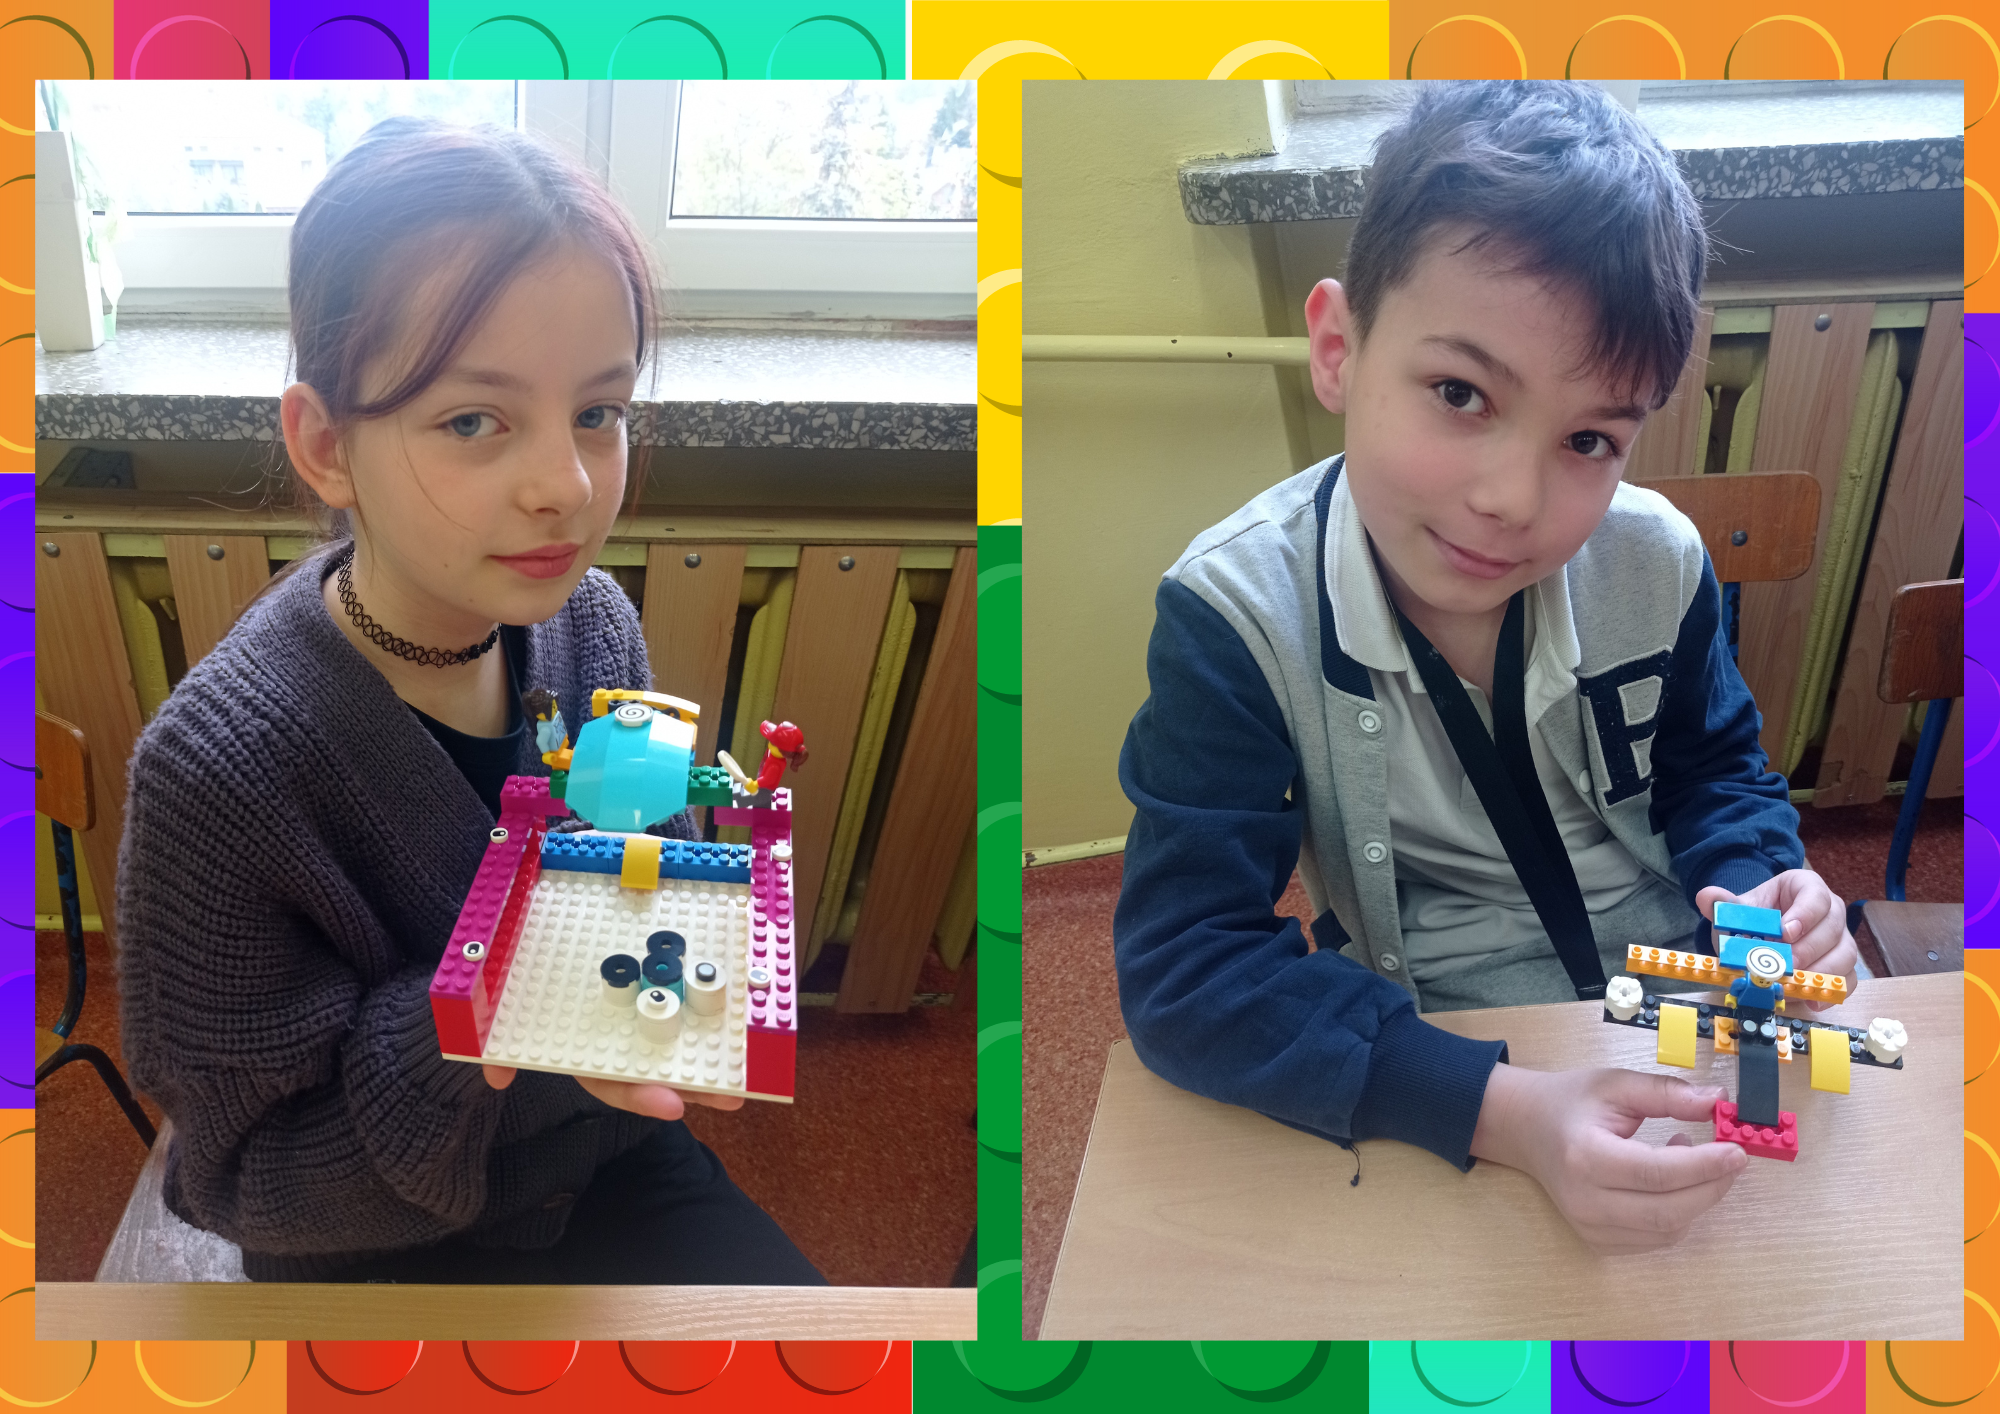 Dzieci prezentują samodzielnie zbudowane modele z klocków lego education.